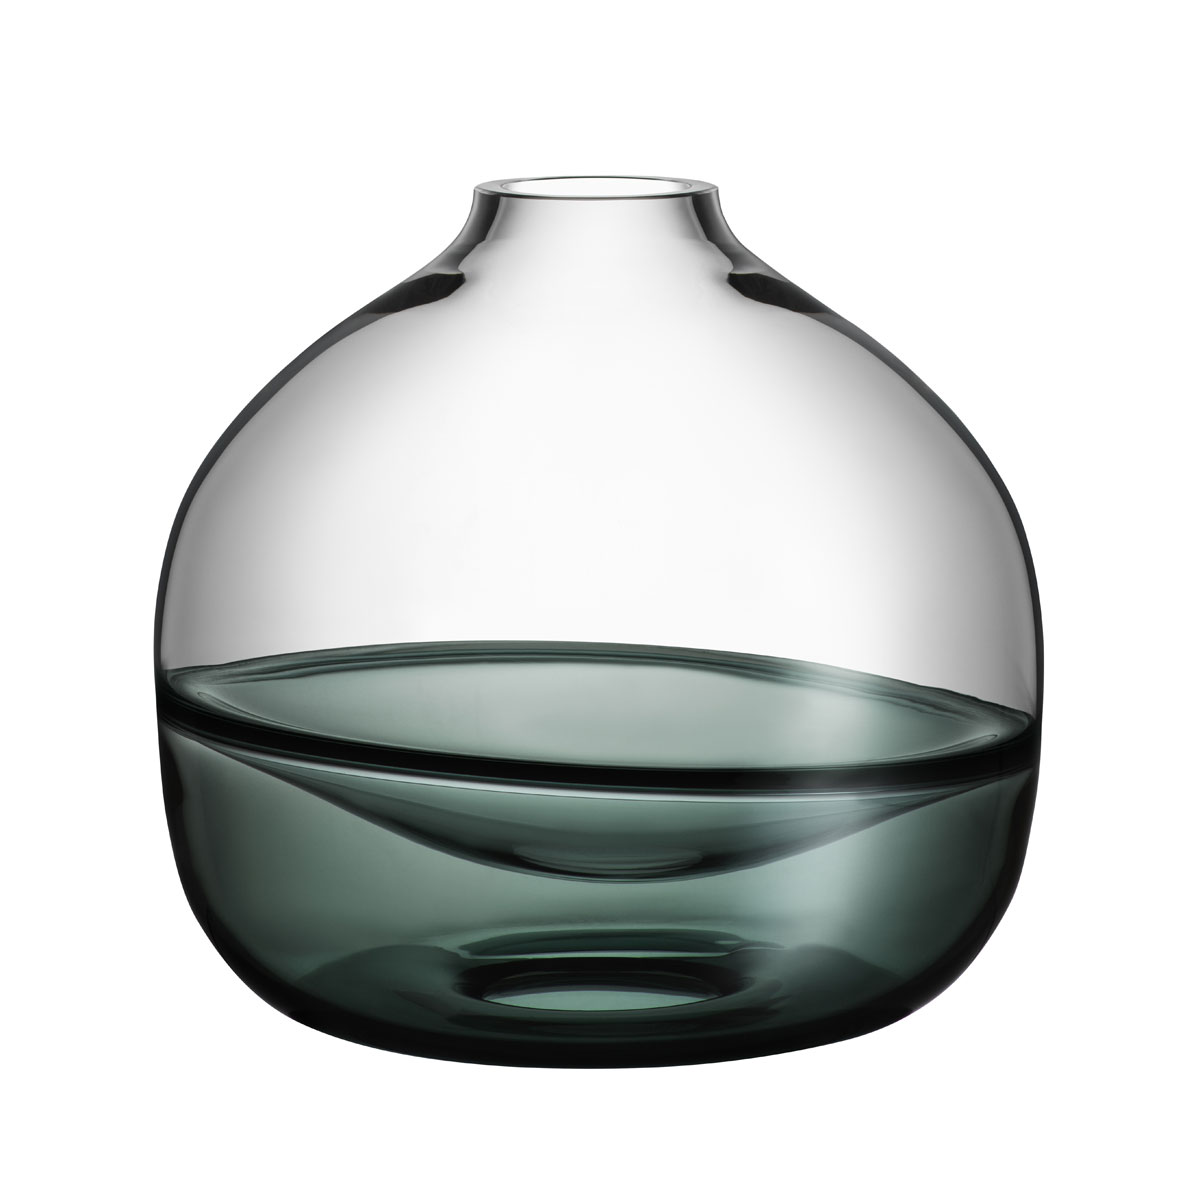 Kosta Boda Crystal Septum Smoke Grey 8.5" Vase Limited Edition 300